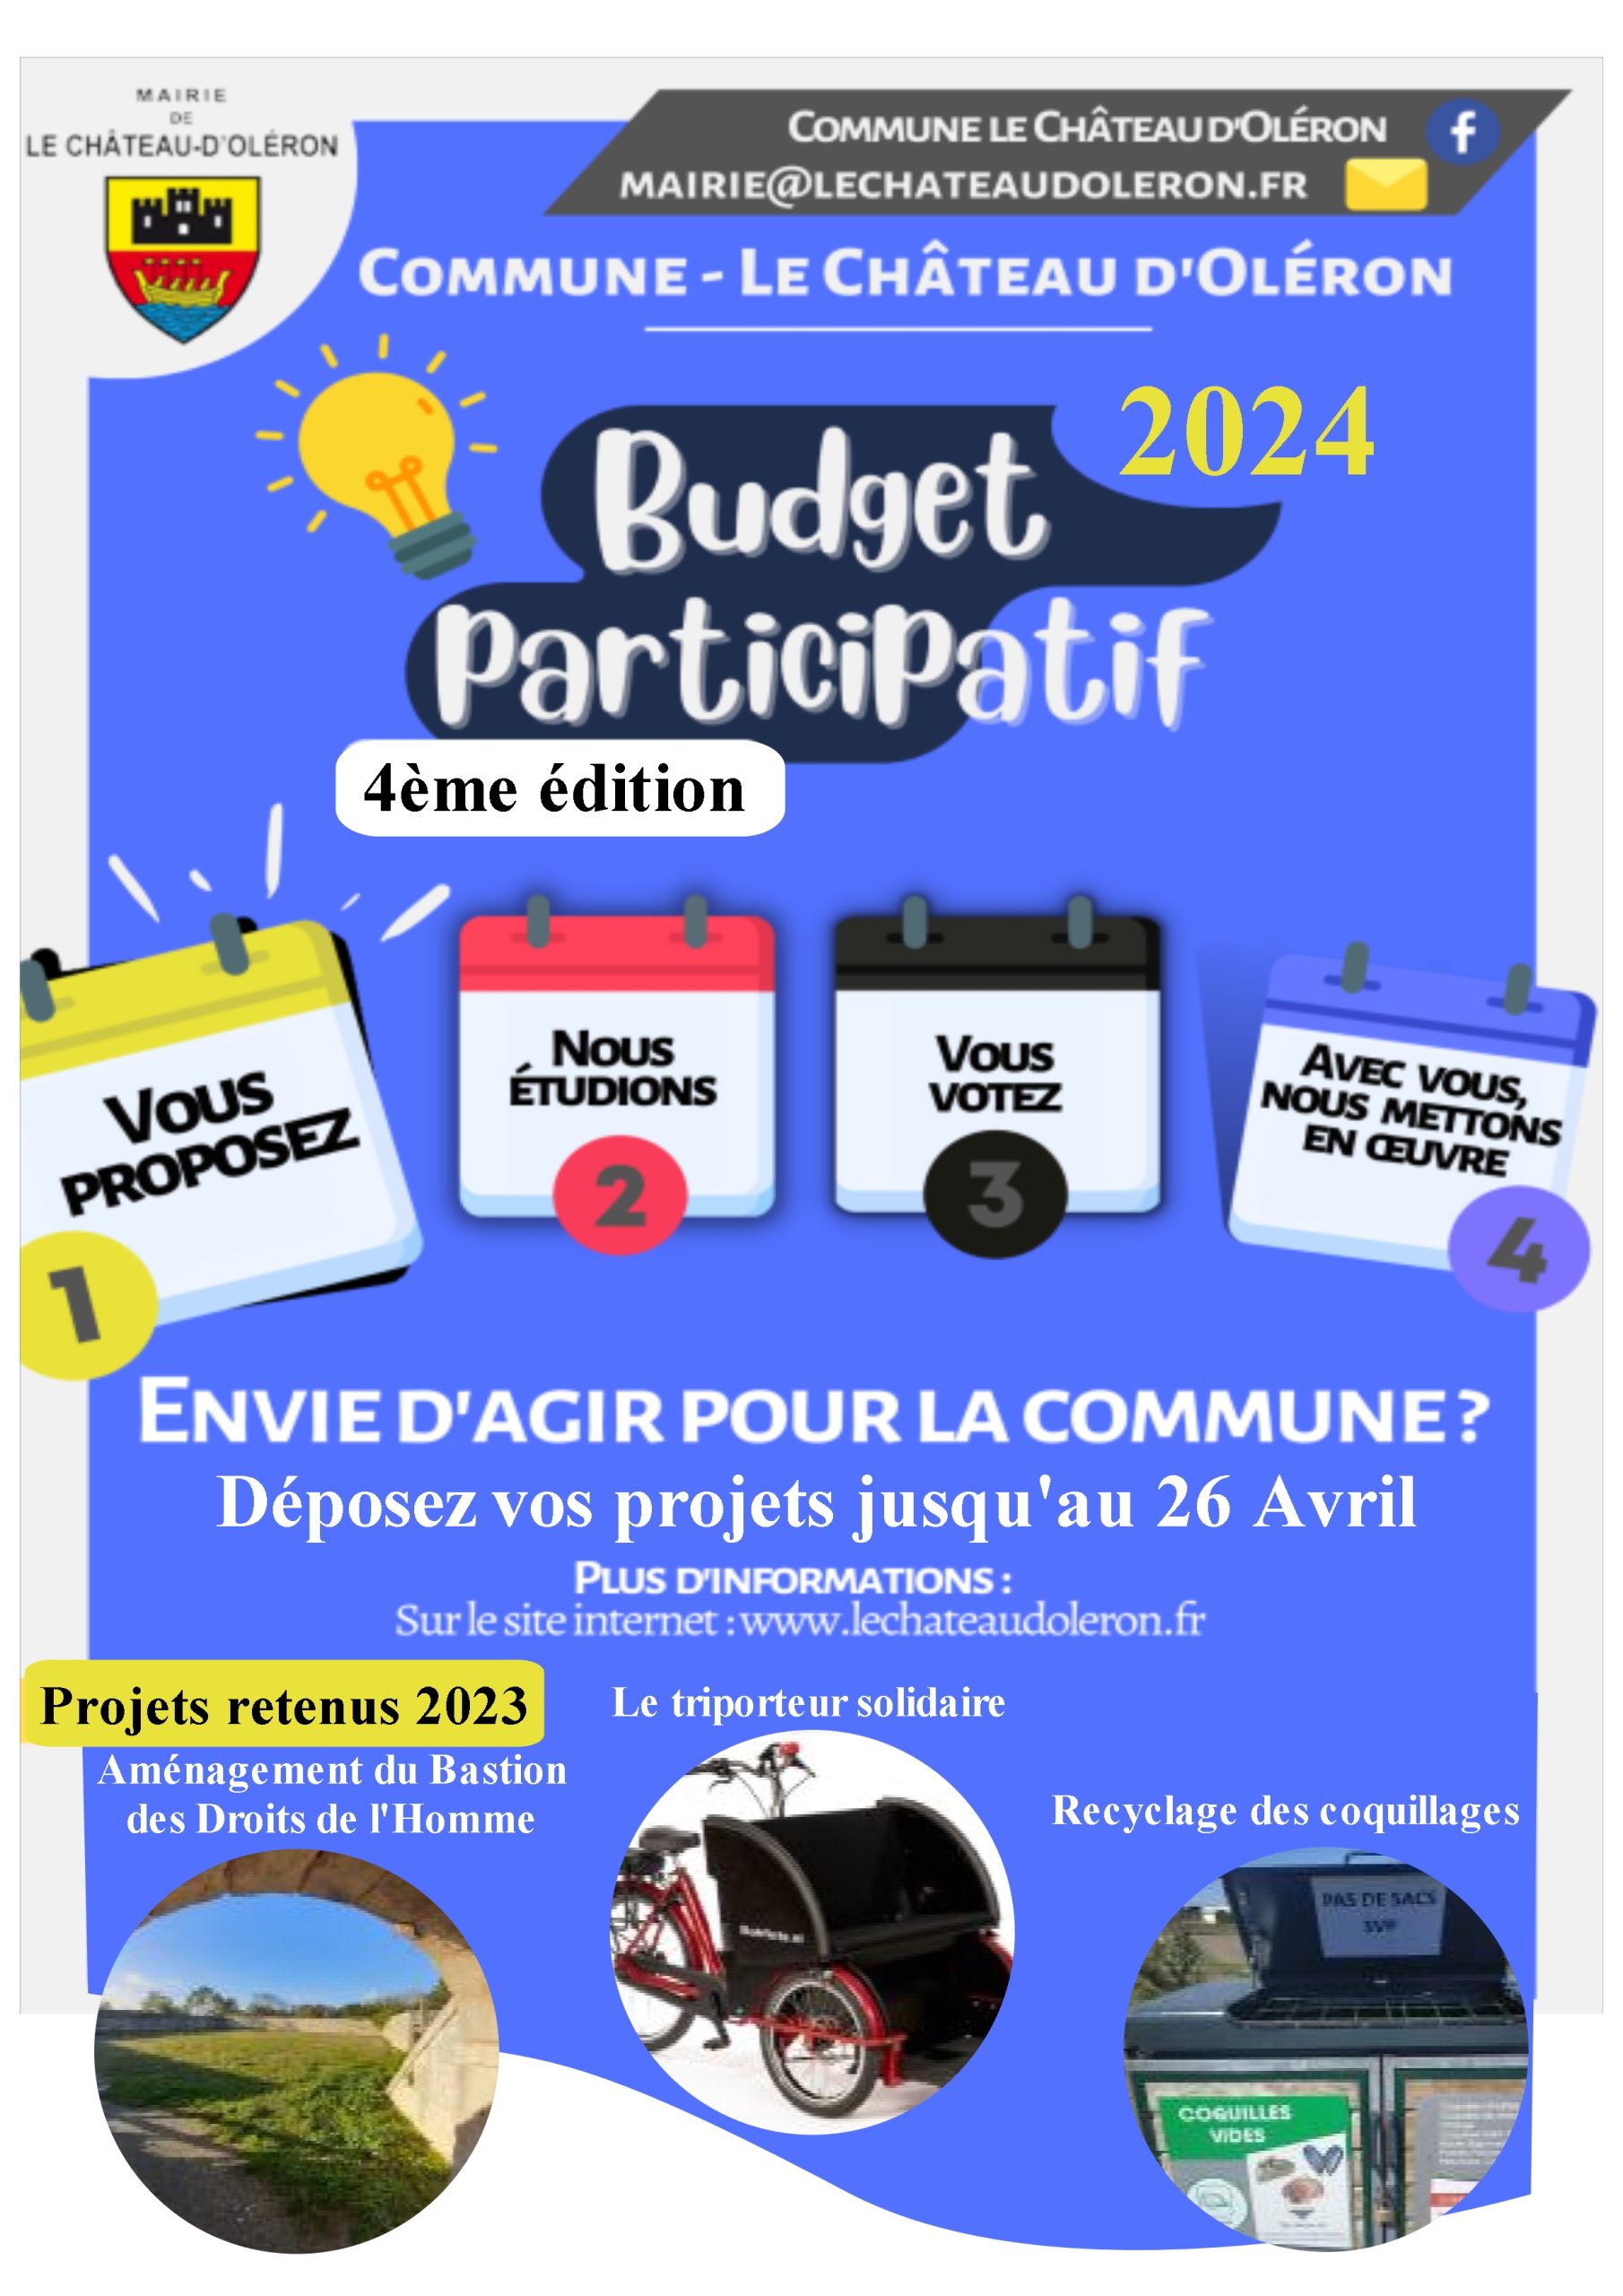 Budget participatif 2024